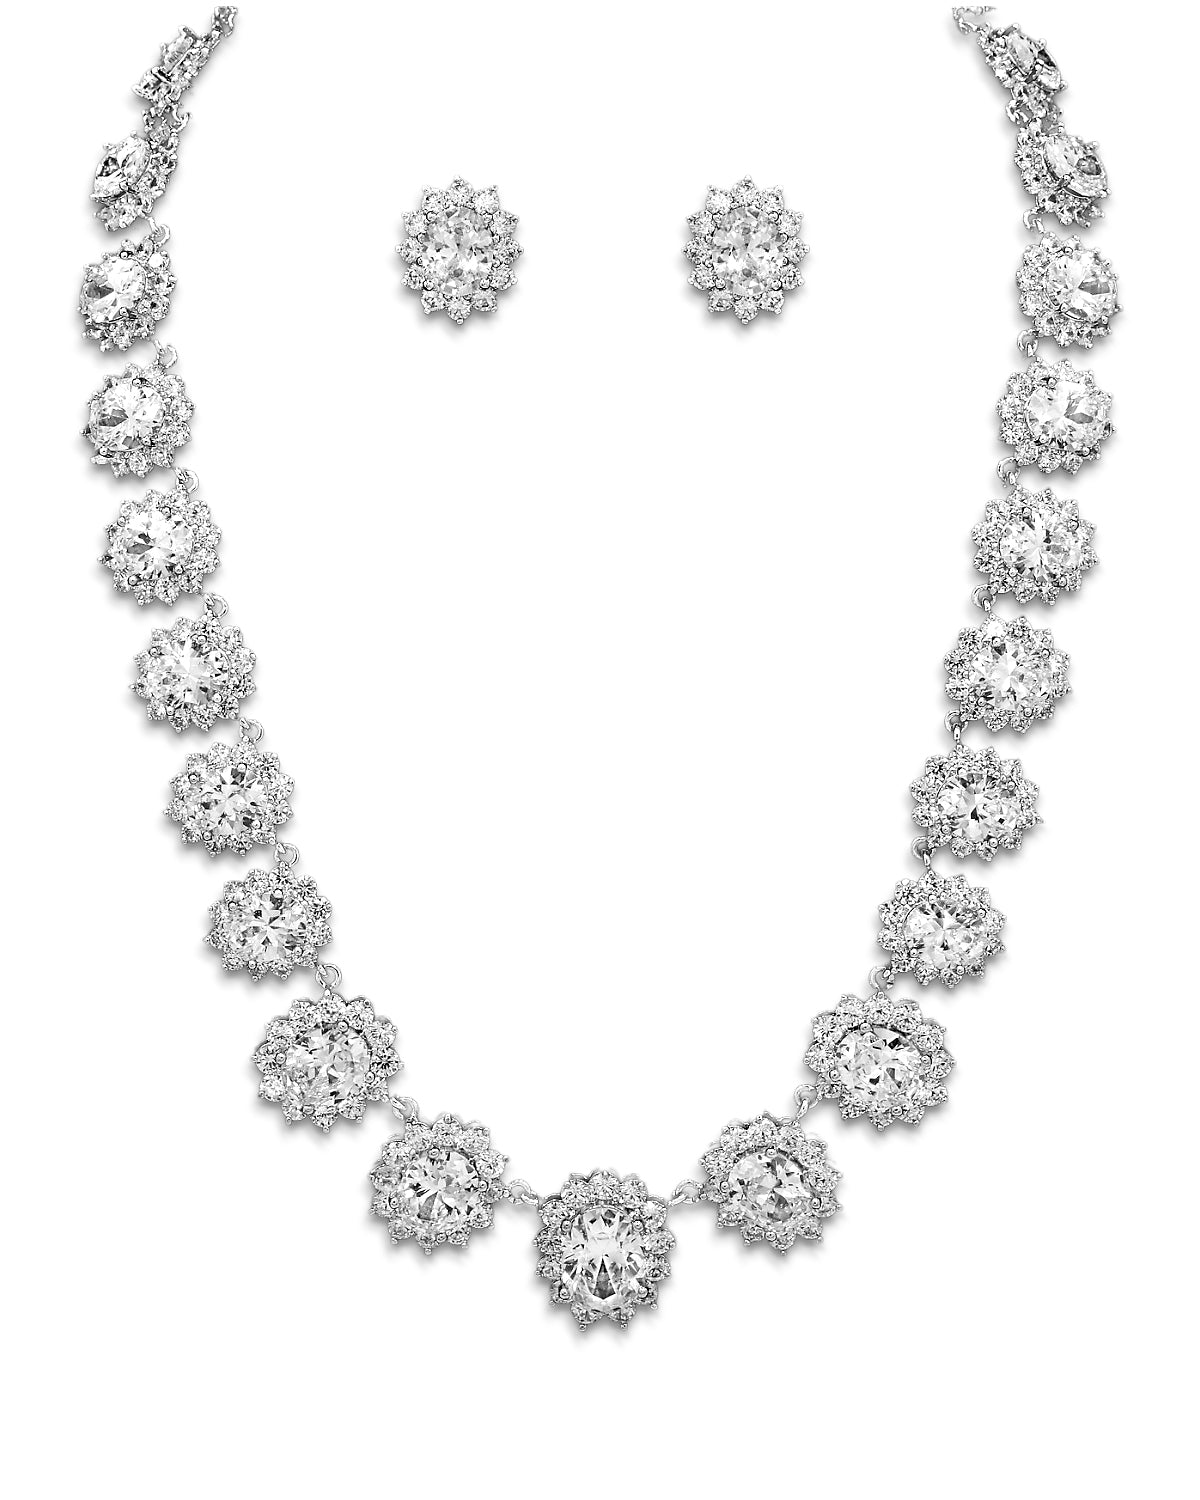 Oval Statement Style Wedding Necklace - Cassandra Lynne